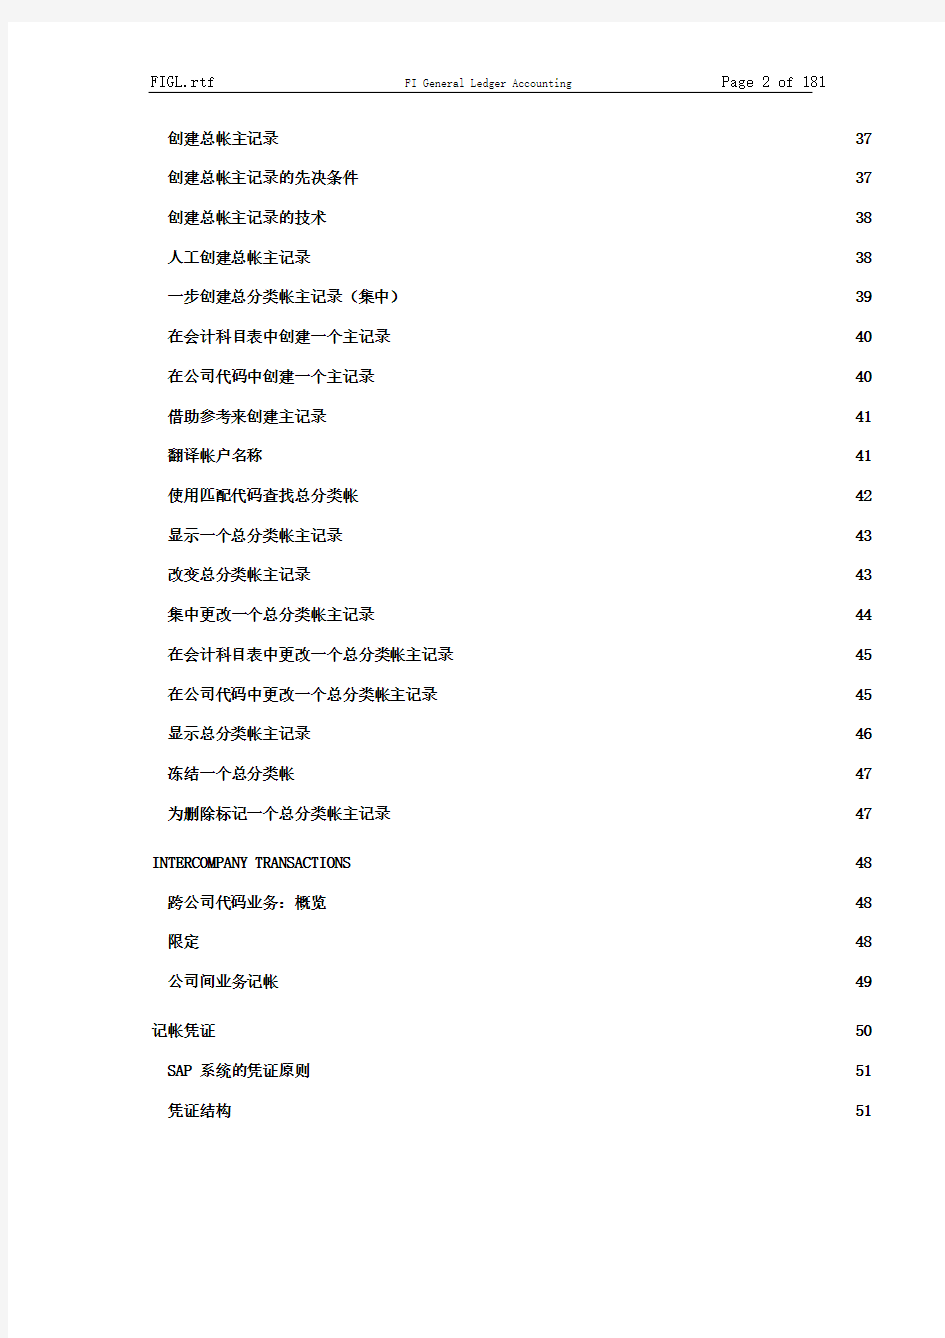 sap中文使用手册——FI总账